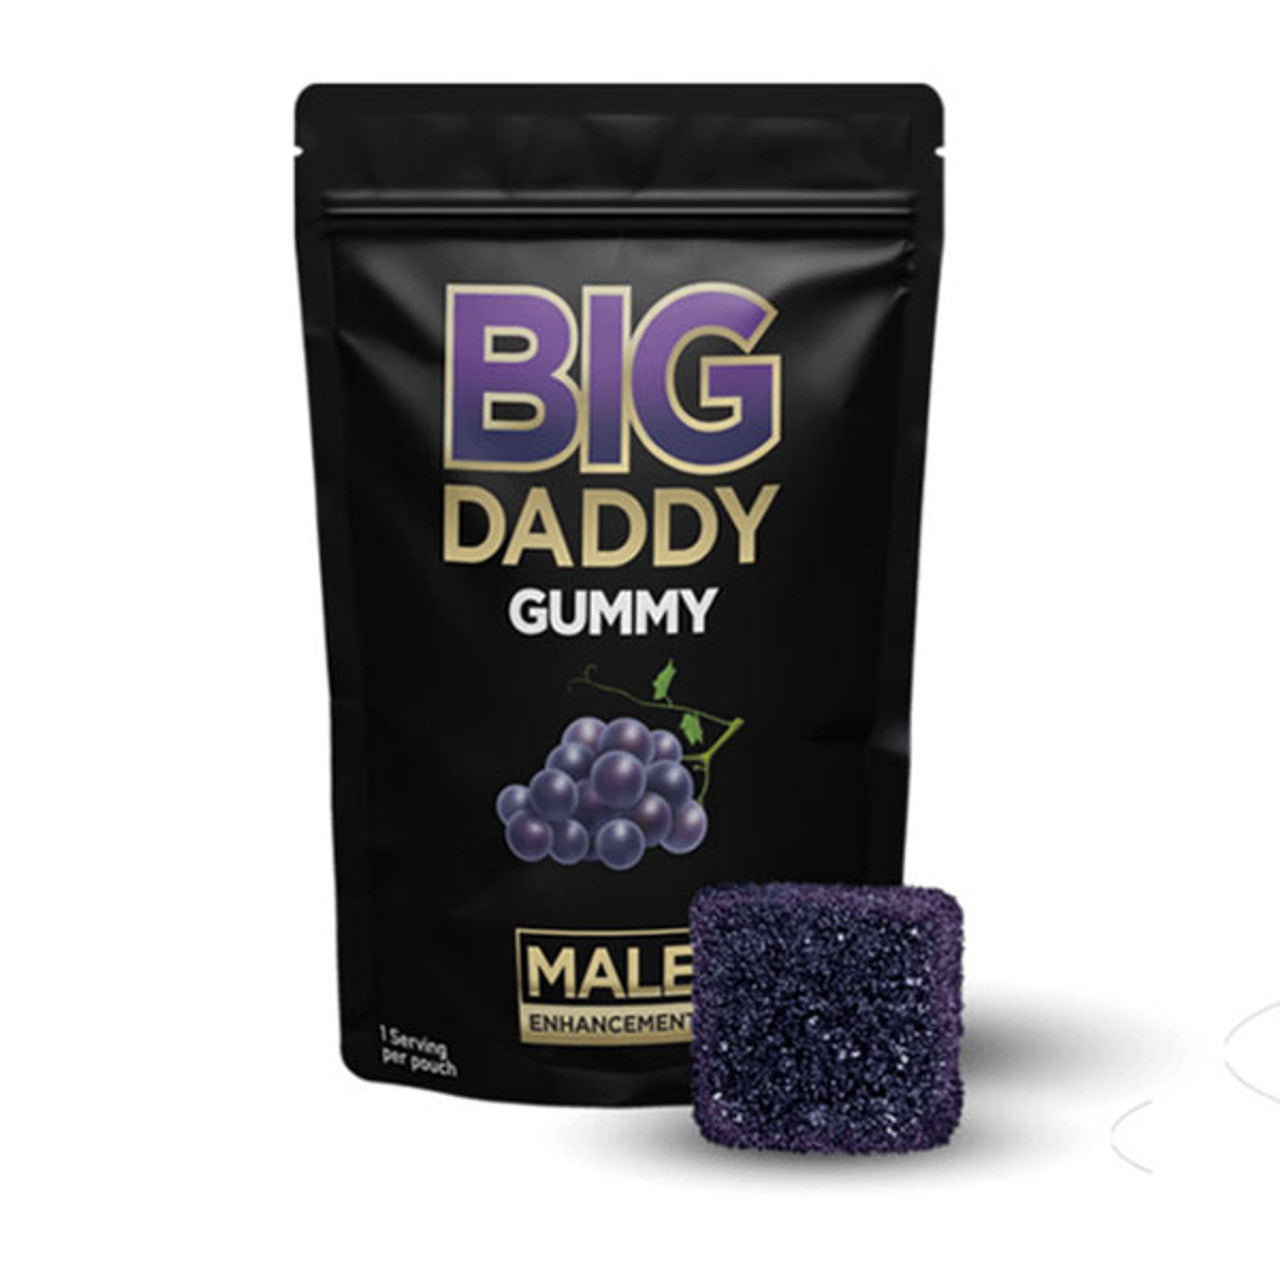 Big Daddy Male Enhancement Gummy